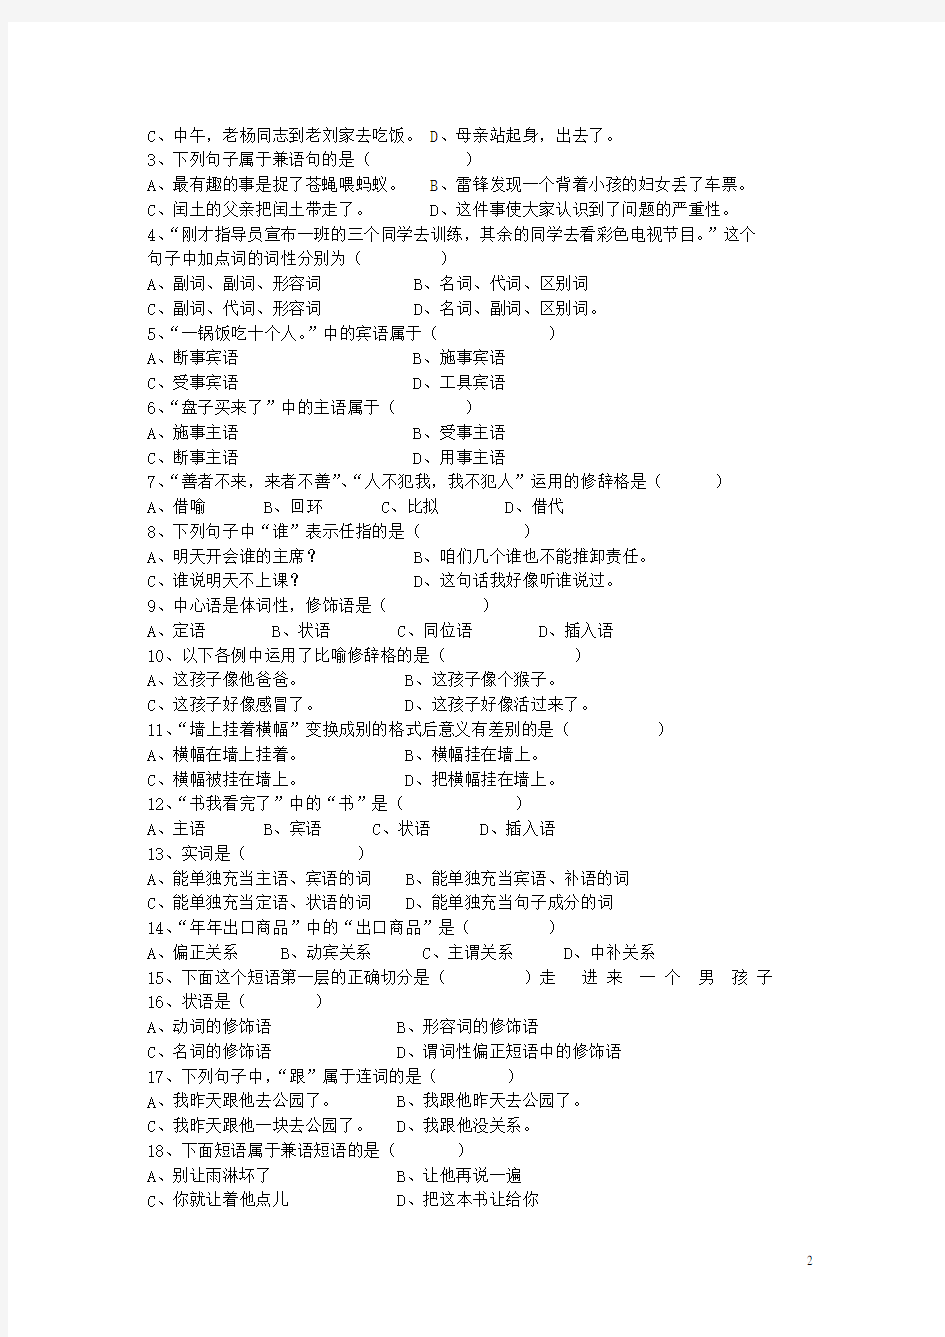 《现代汉语语法修辞》 综合试卷有全部答案